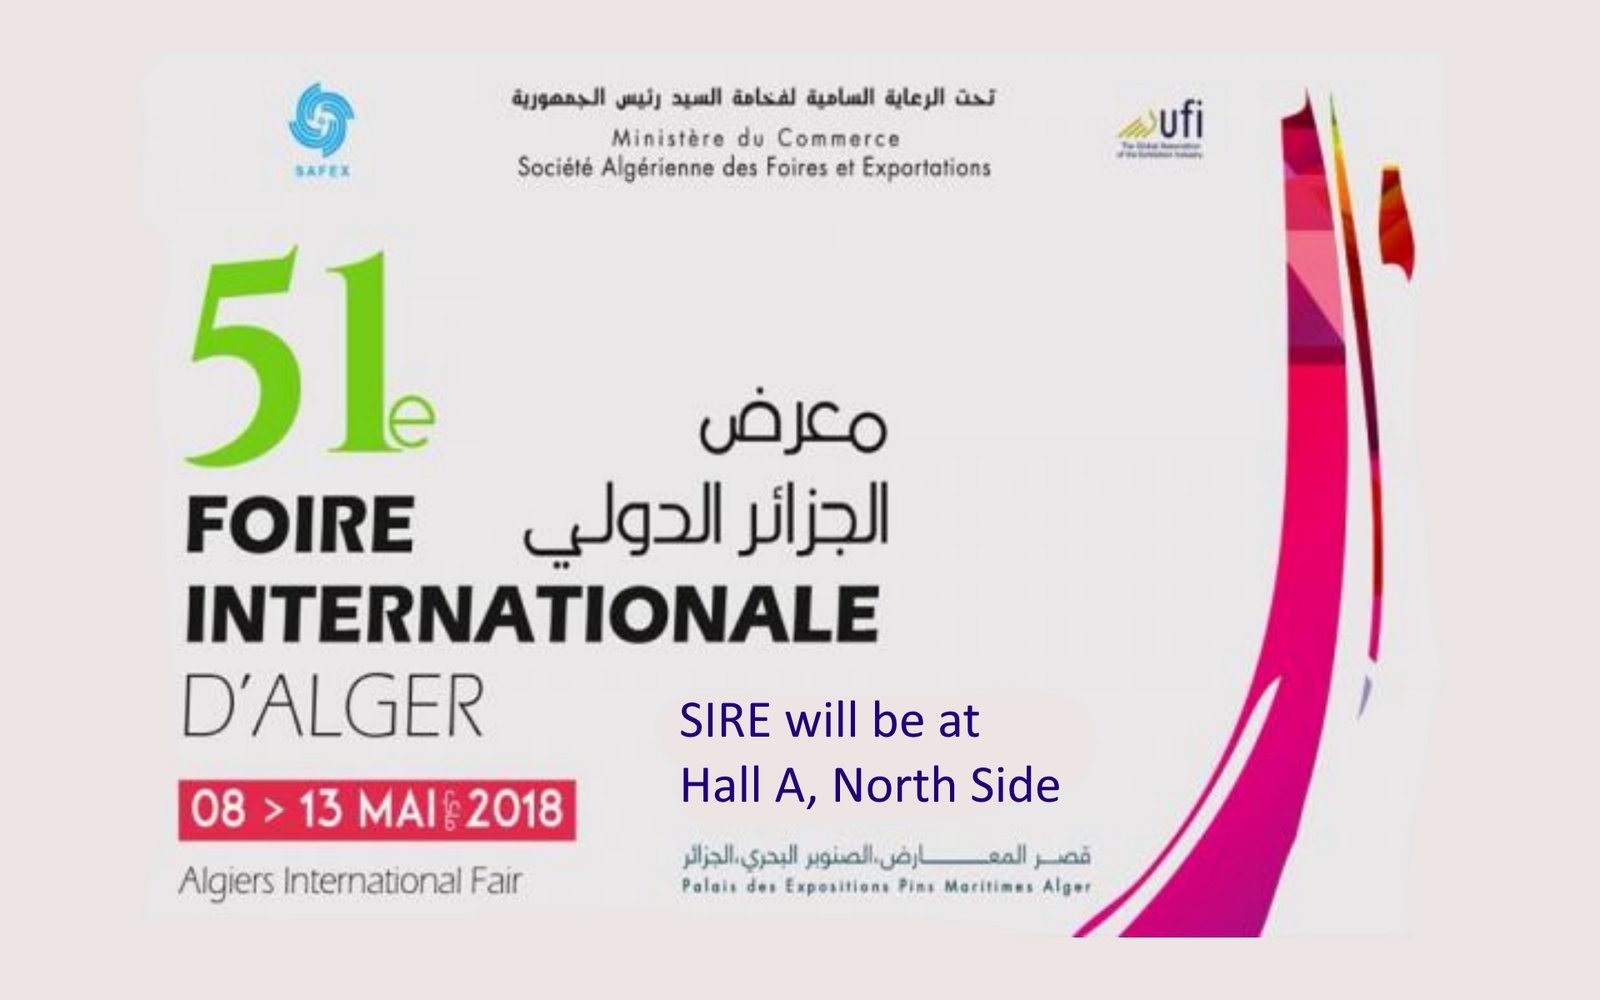 MEET US @ La Foire Internationale d’Alger